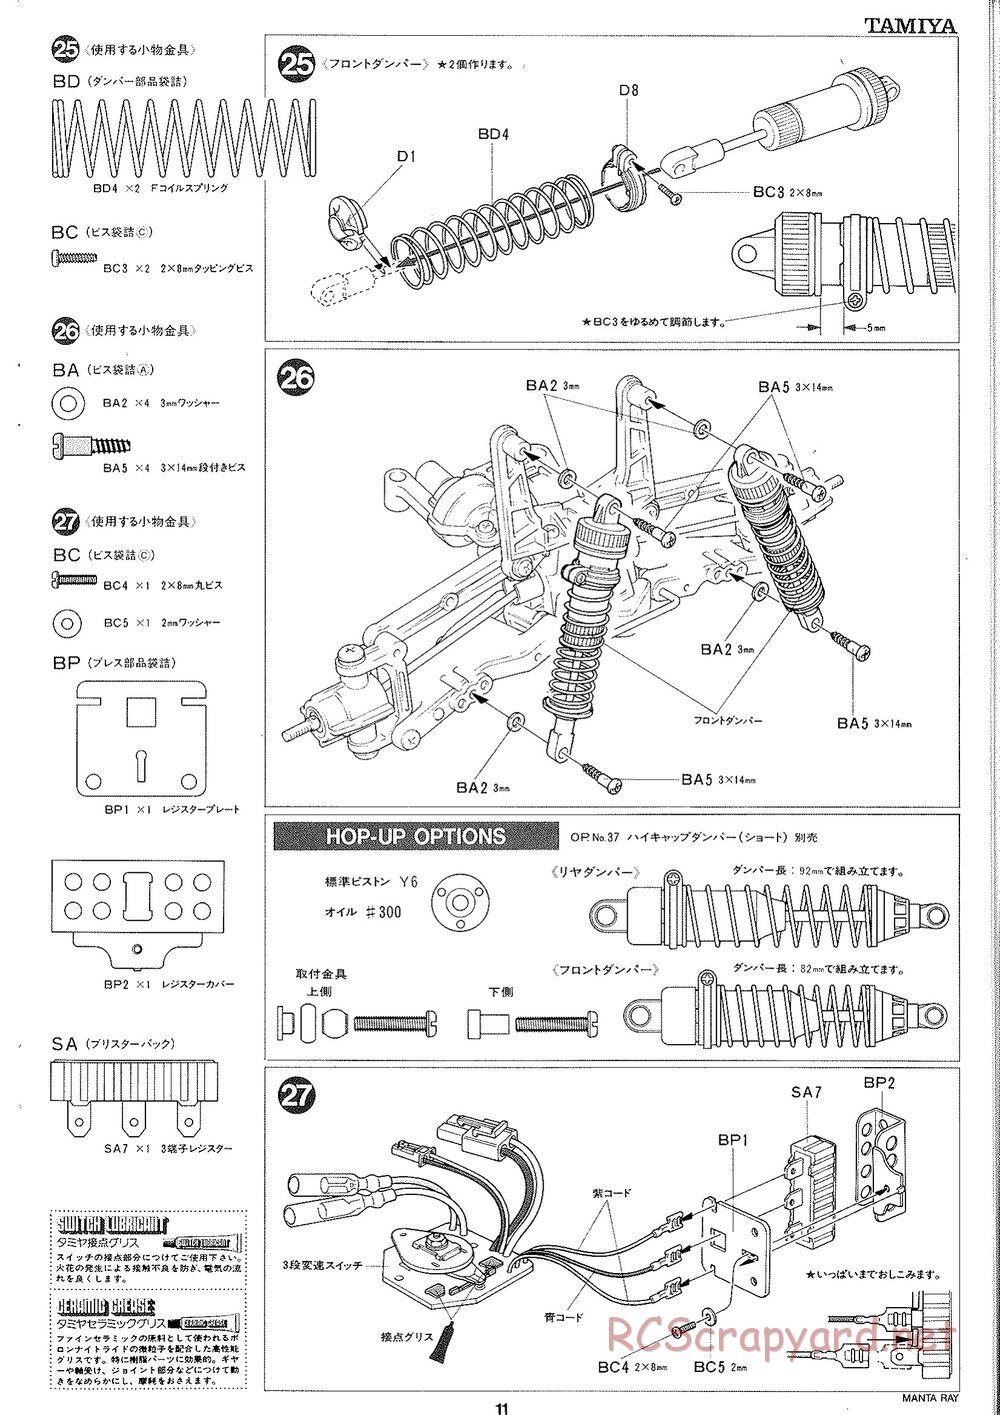 Tamiya - Manta Ray 2005 - DF-01 Chassis - Manual - Page 12